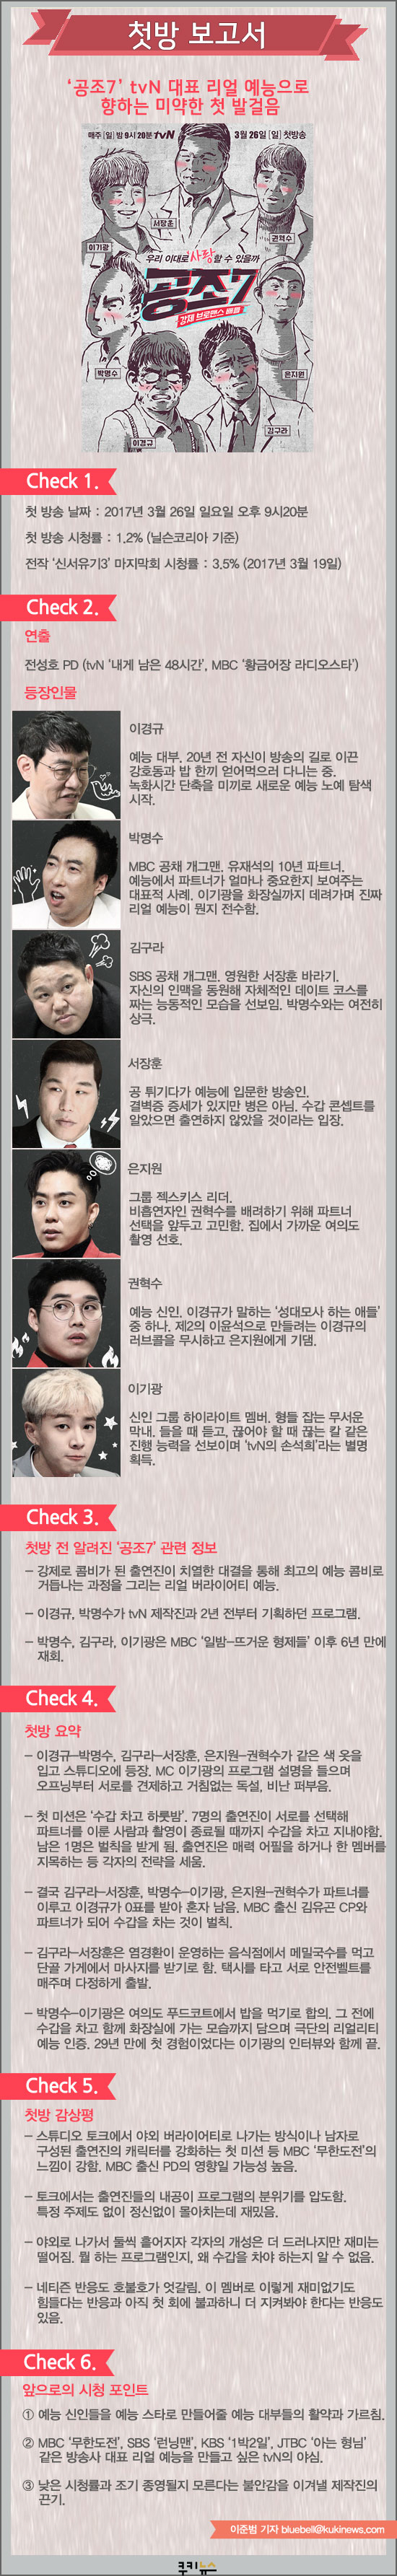 [첫방 보고서] ‘공조7’ tvN 대표 리얼 예능으로 향하는 미약한 첫 발걸음